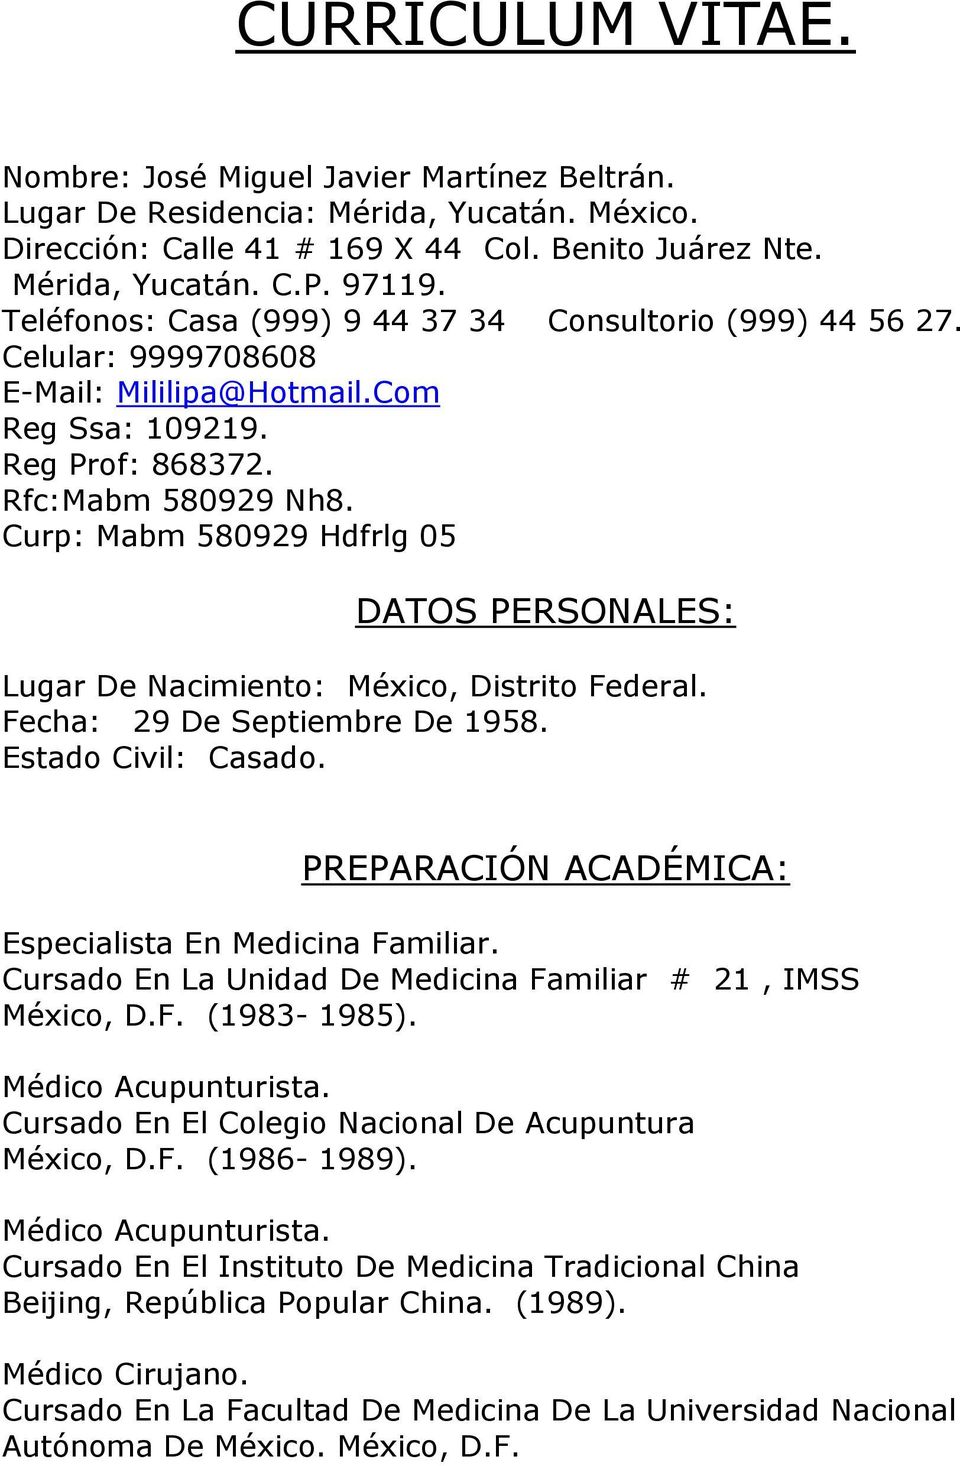 Curp: Mabm 580929 Hdfrlg 05 DATOS PERSONALES: Lugar De Nacimiento: México, Distrito Federal. Fecha: 29 De Septiembre De 1958. Estado Civil: Casado.